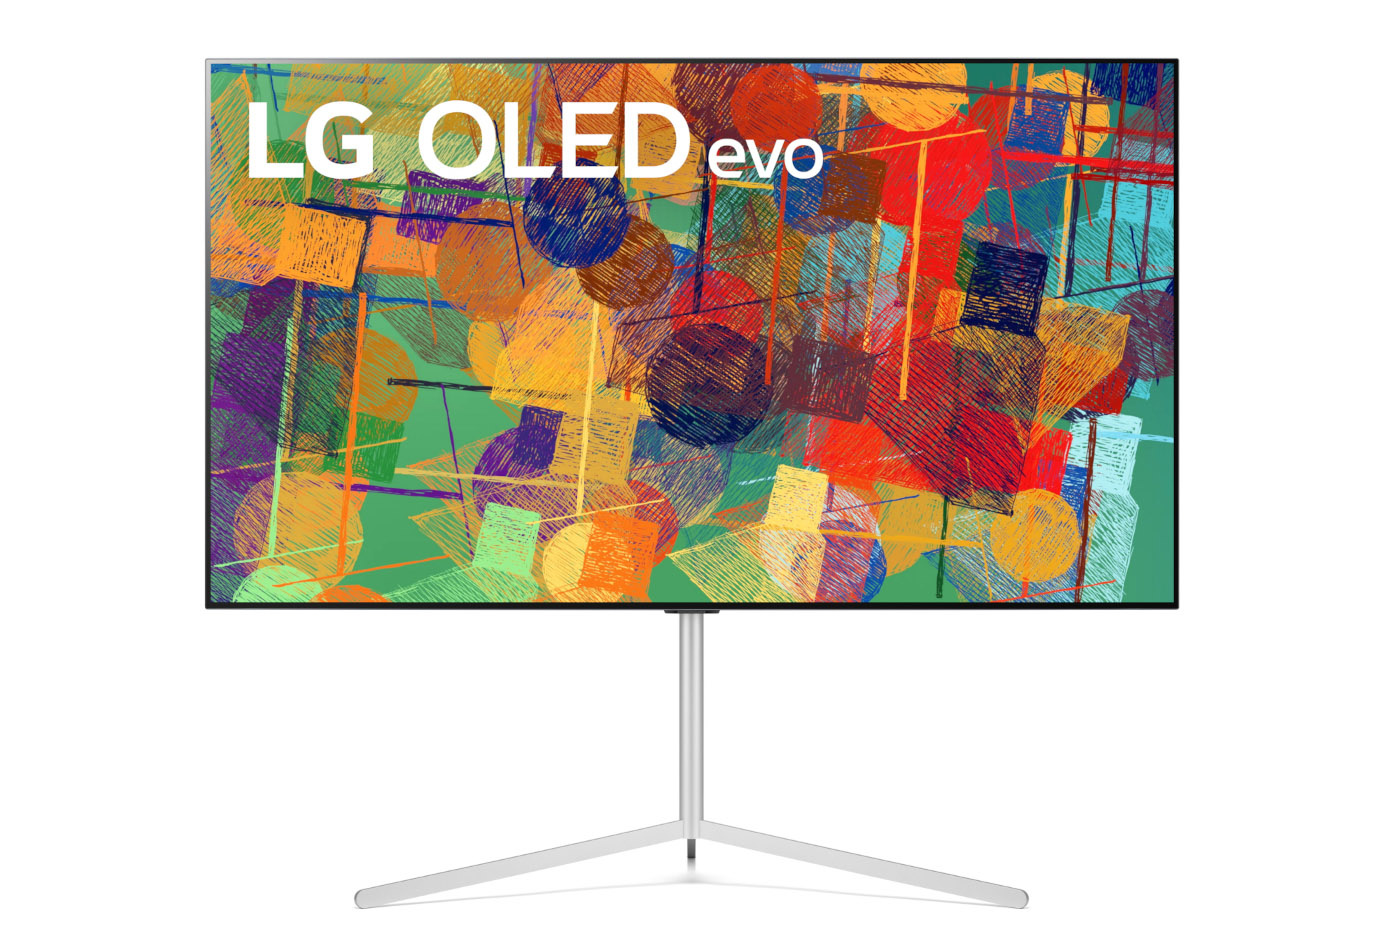 ال جی از درخشان‌ترین تلویزیون‌‌های OLED رونمایی کرد